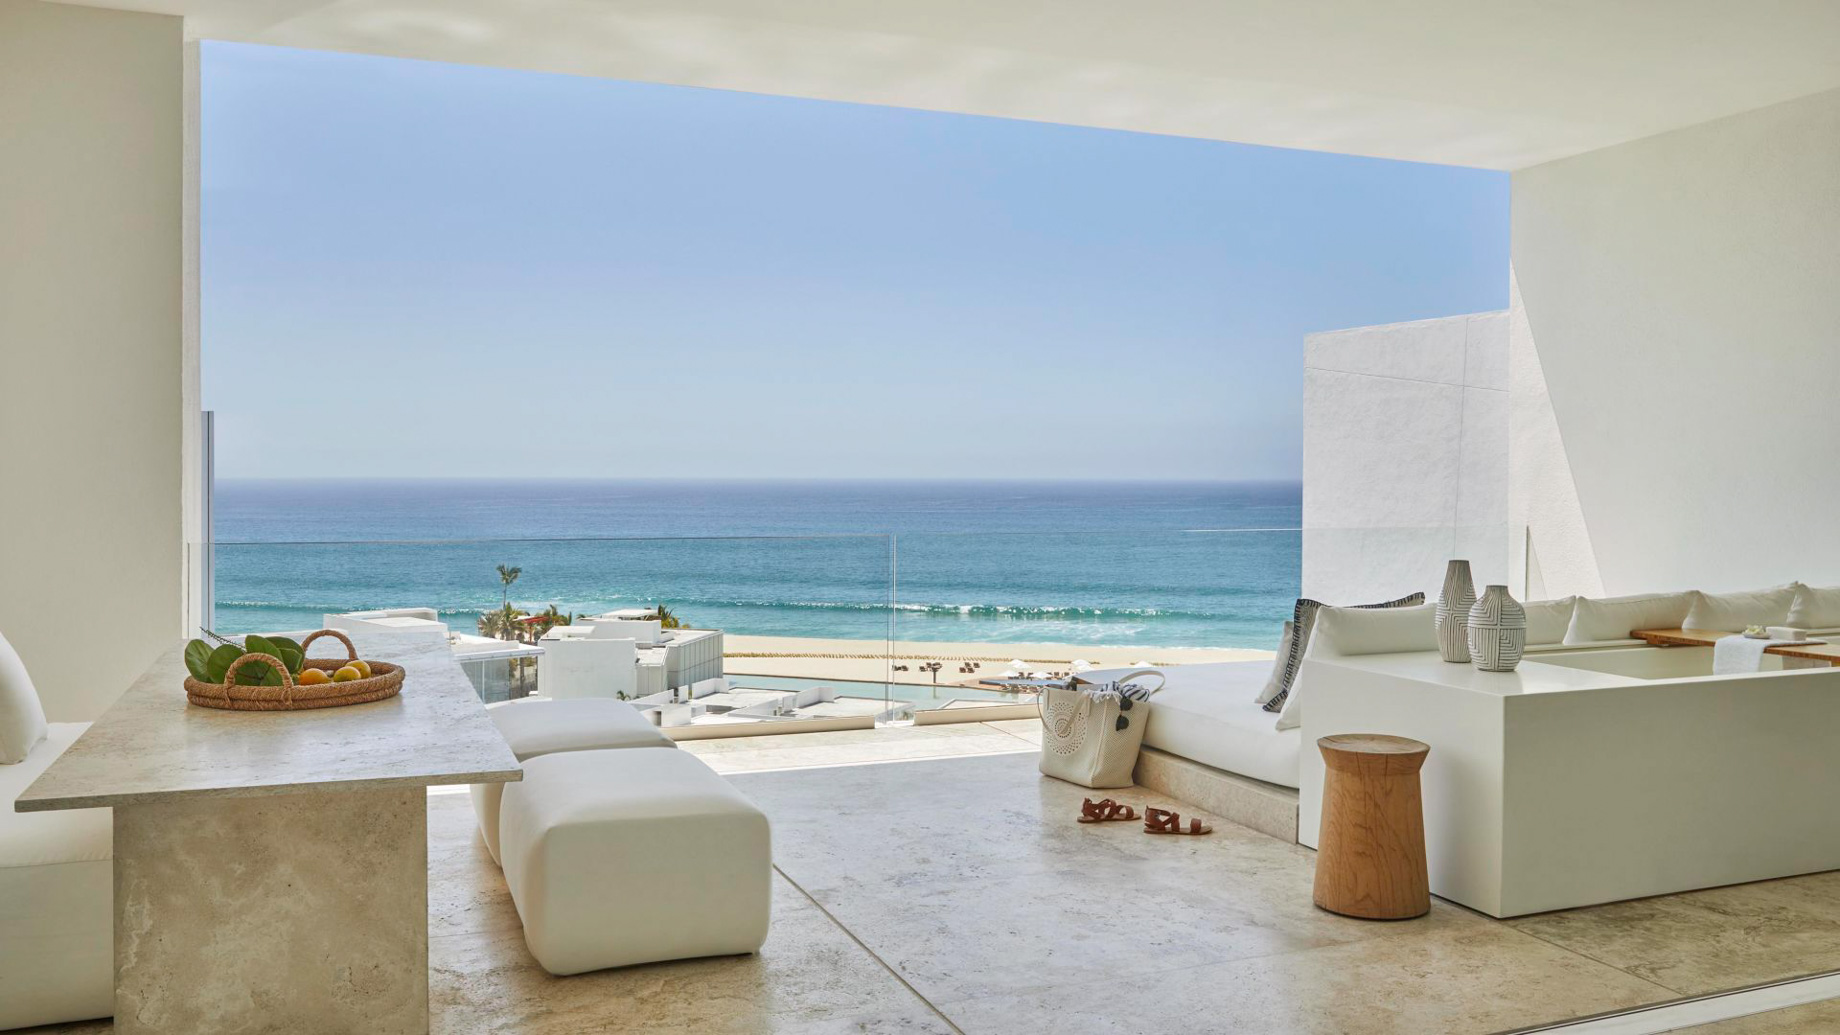 Viceroy Los Cabos Resort – San José del Cabo, Mexico – Ocean View Two Bedroom Suite Balcony